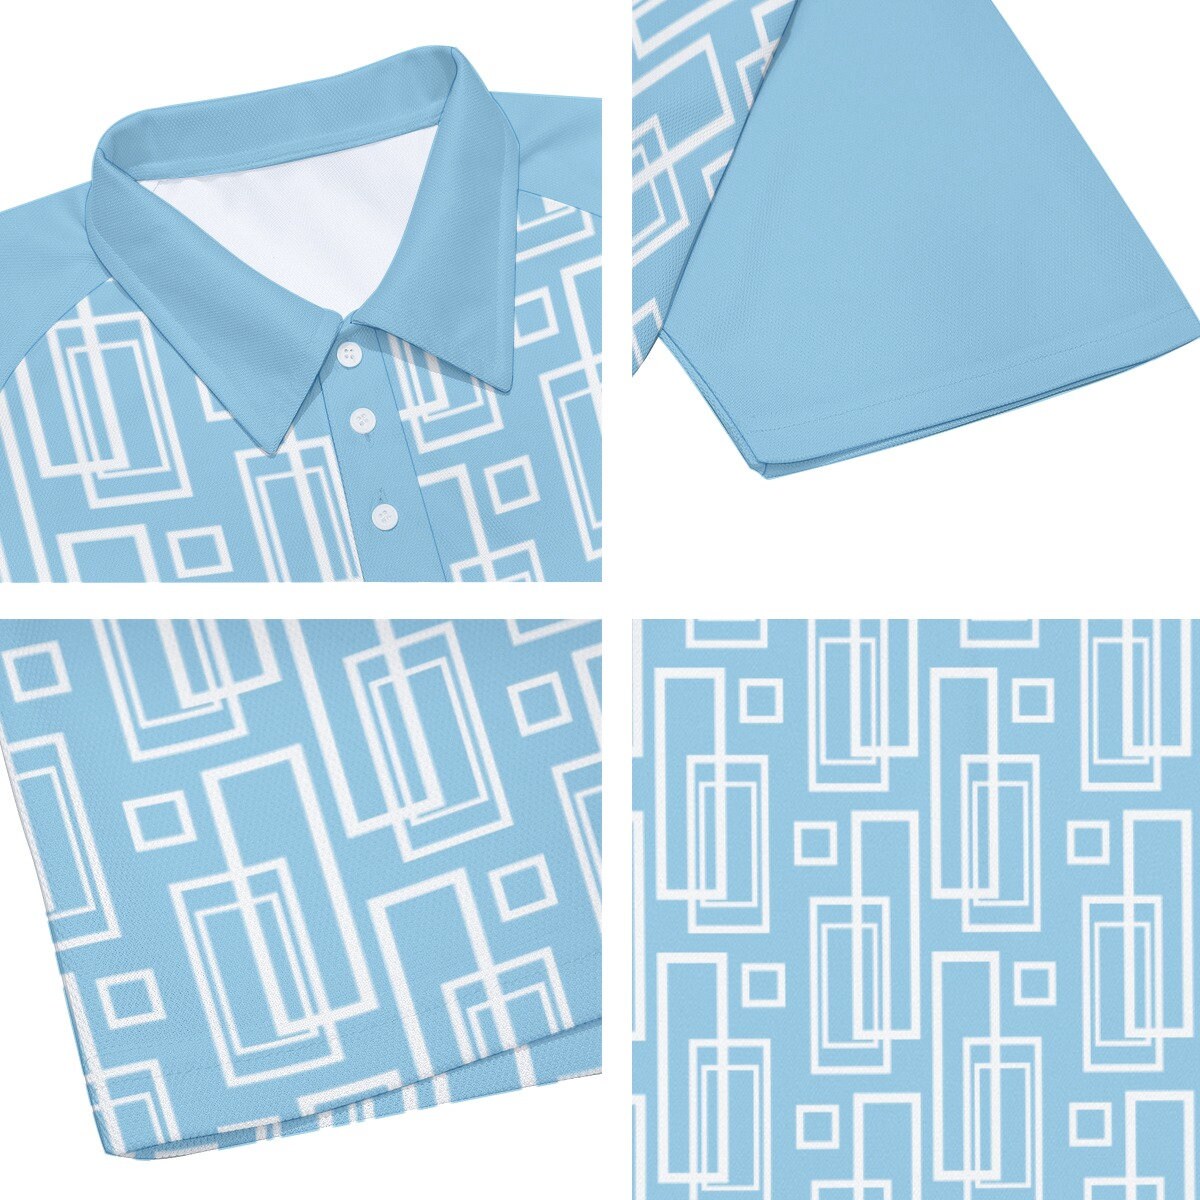 Poloshirt, Herren-Poloshirt, blaues Hemd Herren. Vintage-Stil-Shirt, Herren-Vintage-Shirt, blaues Poloshirt, Herren-Strickshirt, 60er-70er-Jahre-Shirt